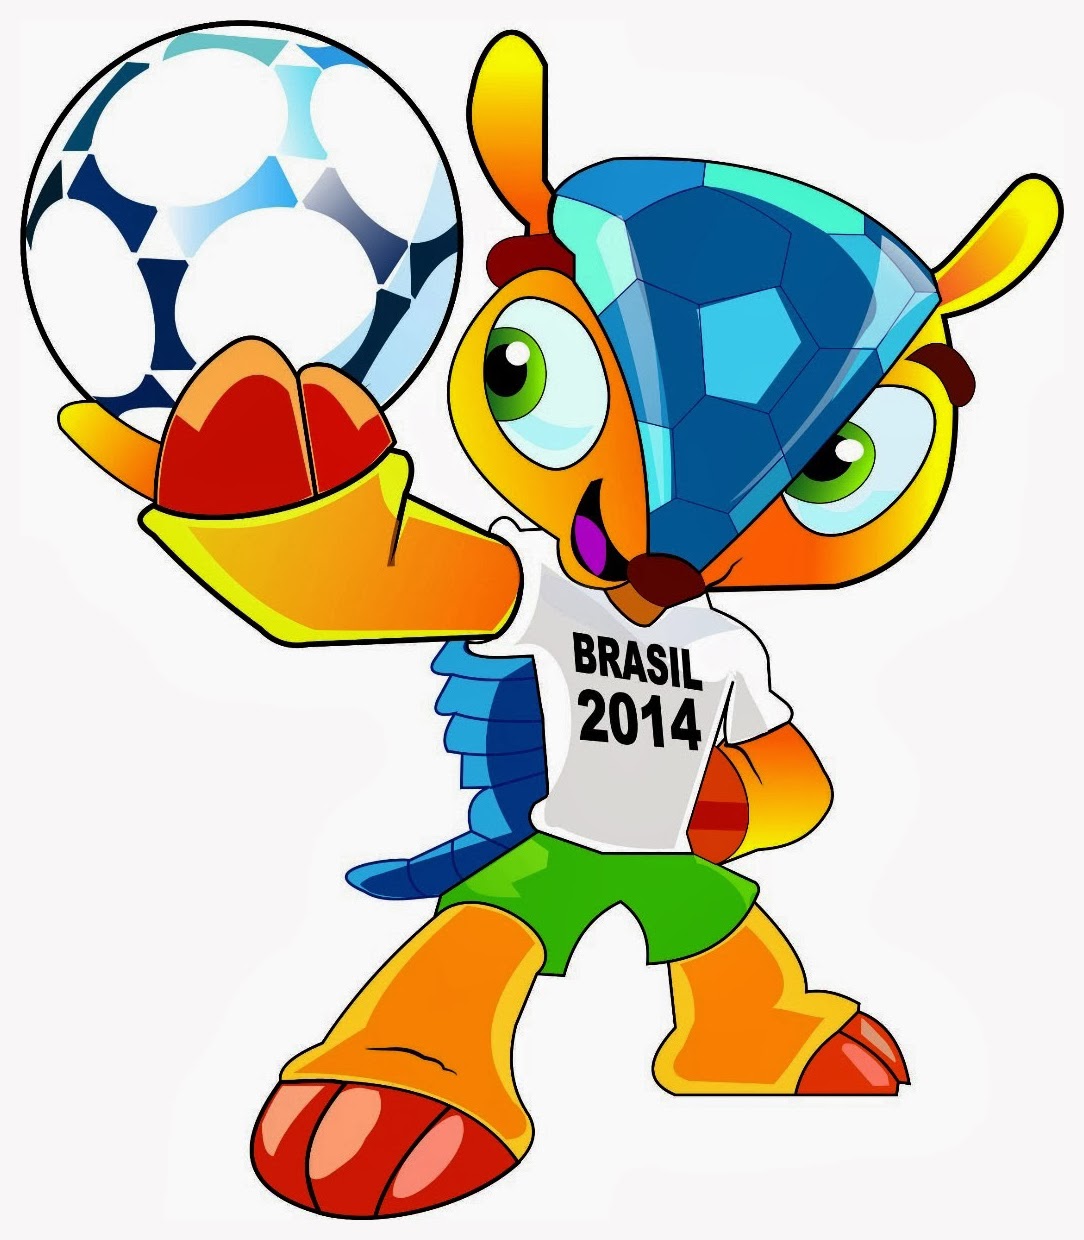 Prediksi Bola Online Piala Dunia 2014 | Situs Judi Bola Indonesia